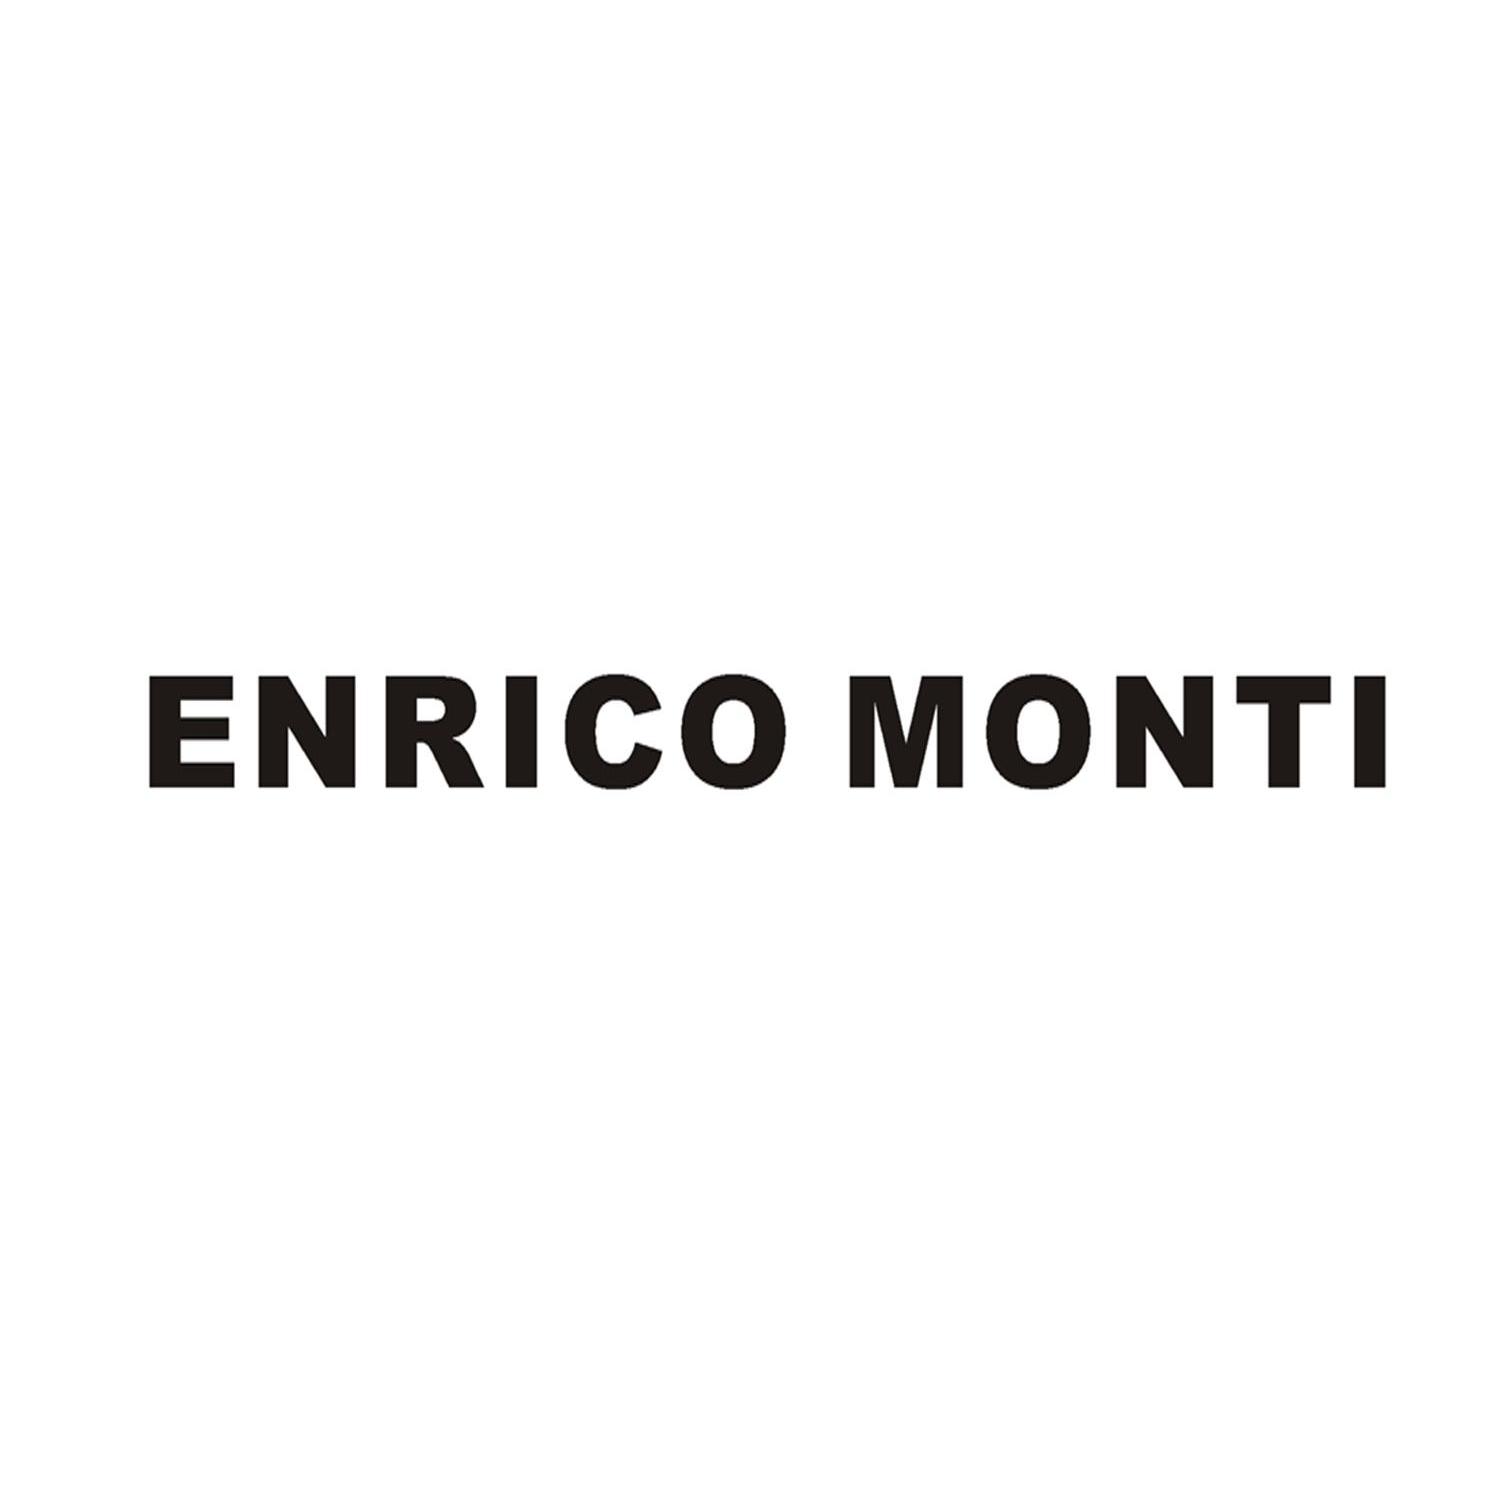 ENRICO MONTI